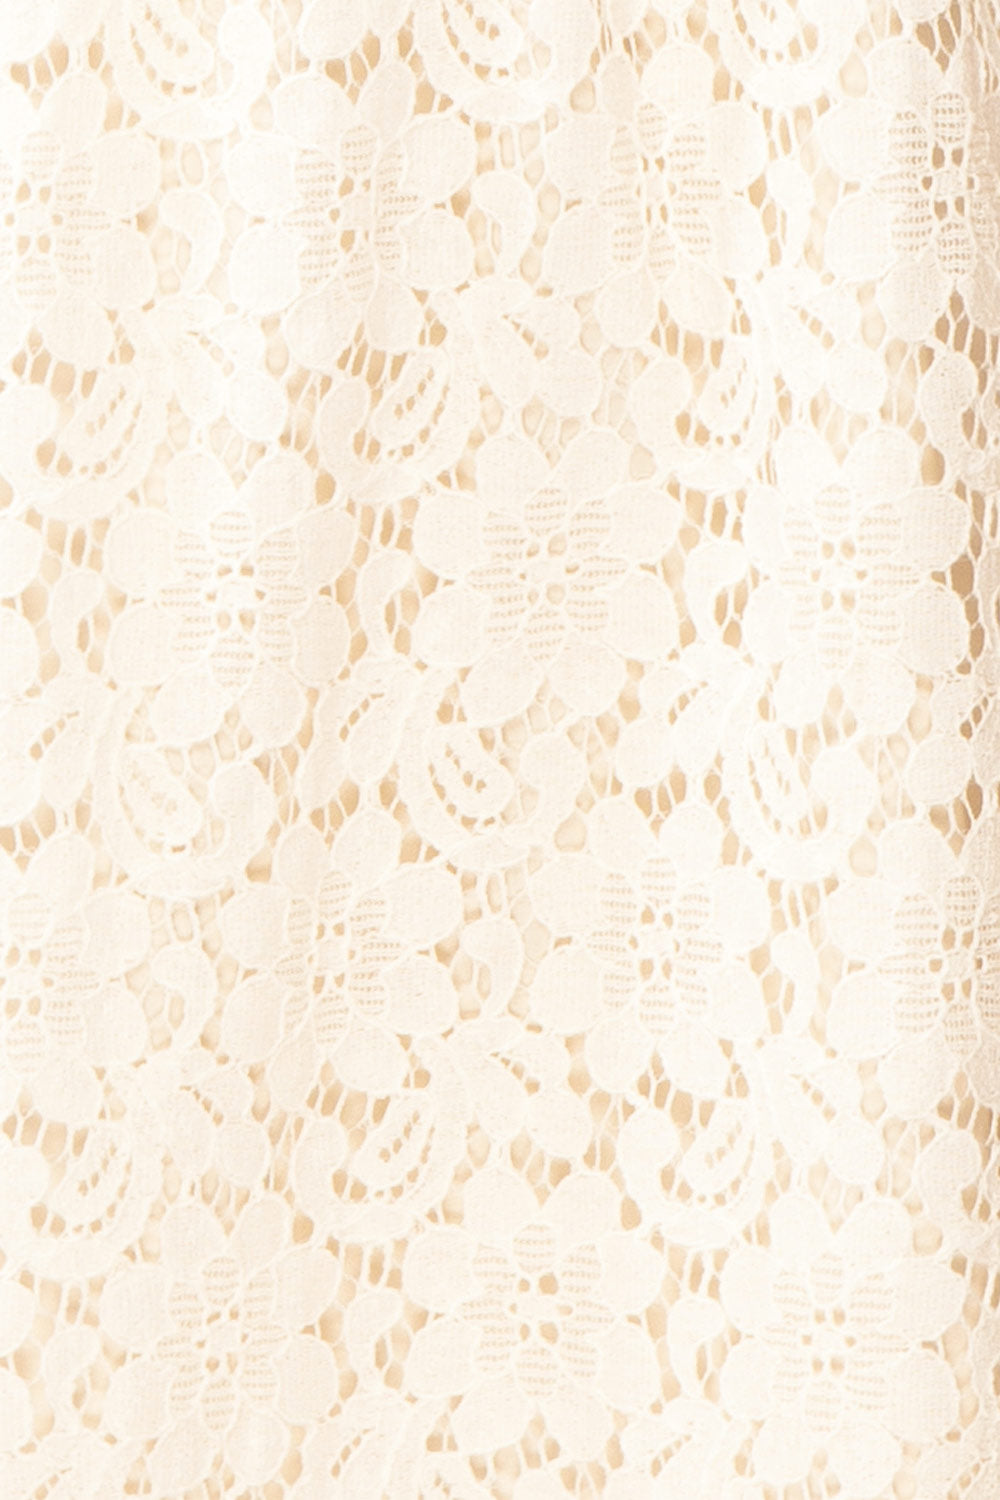 Skileta Lace Short Ivory Dress w/ Batwing Sleeve | Boutique 1861  fabric 